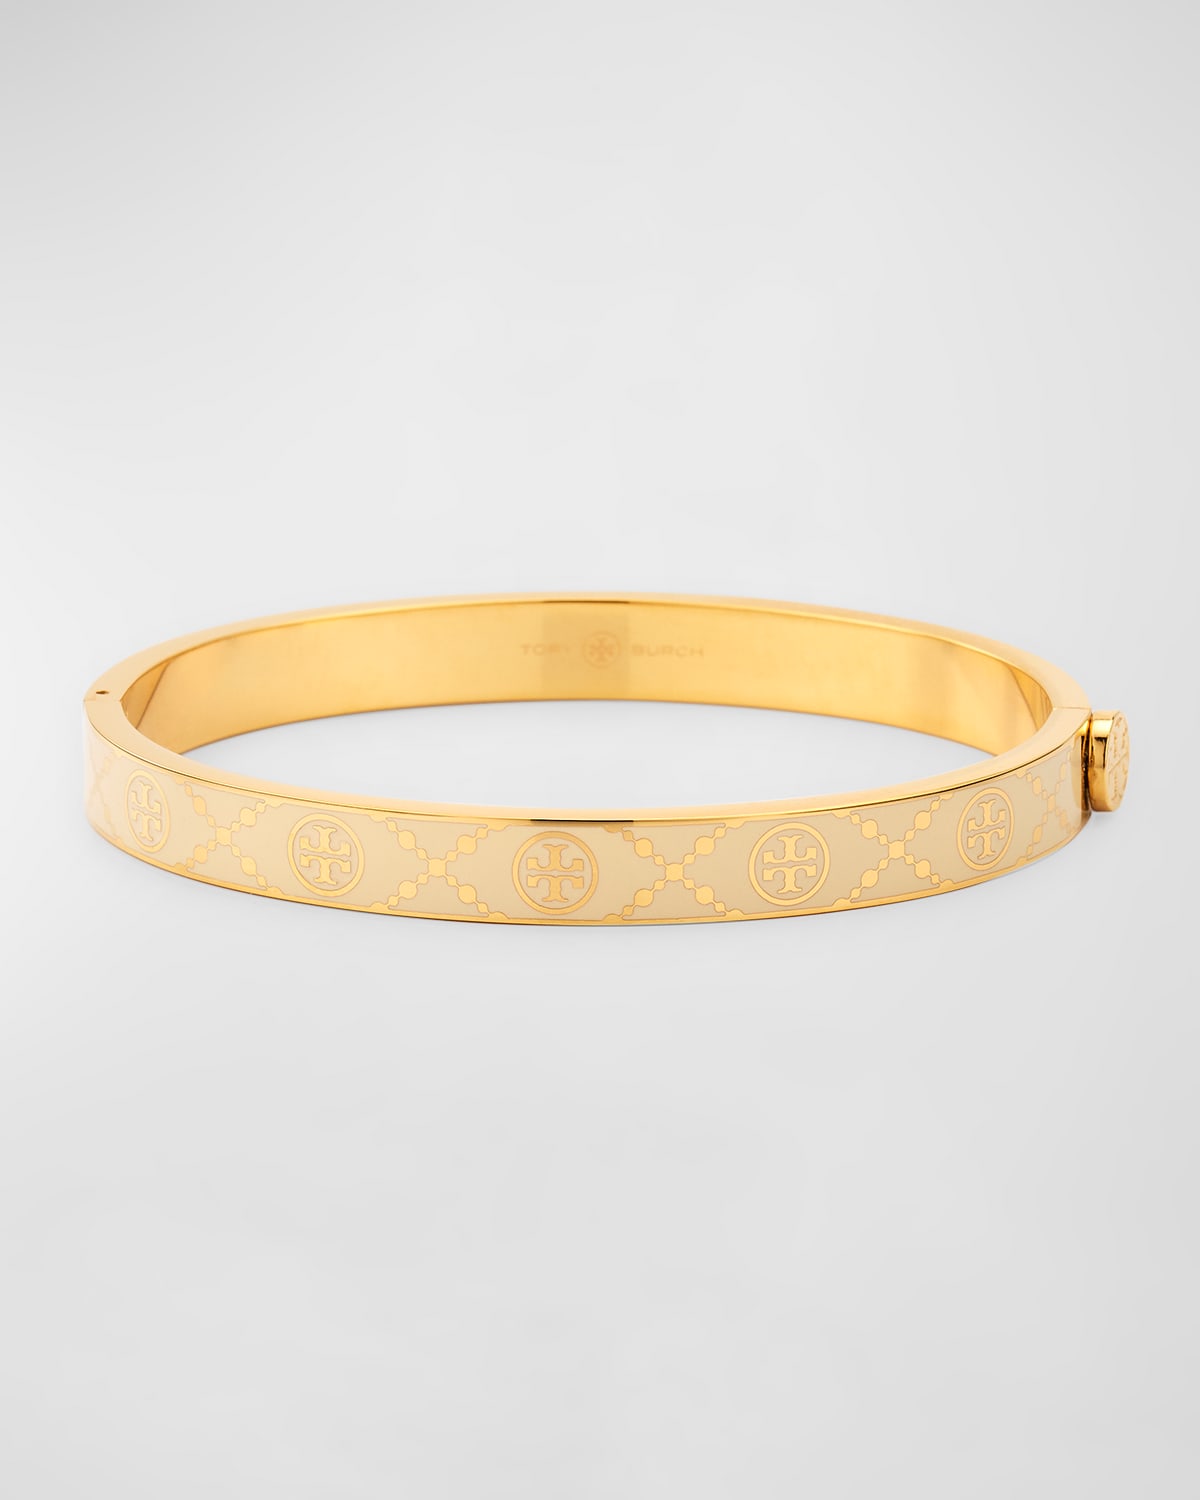 Tory Burch T Monogram Hinge Bracelet, White In Gold